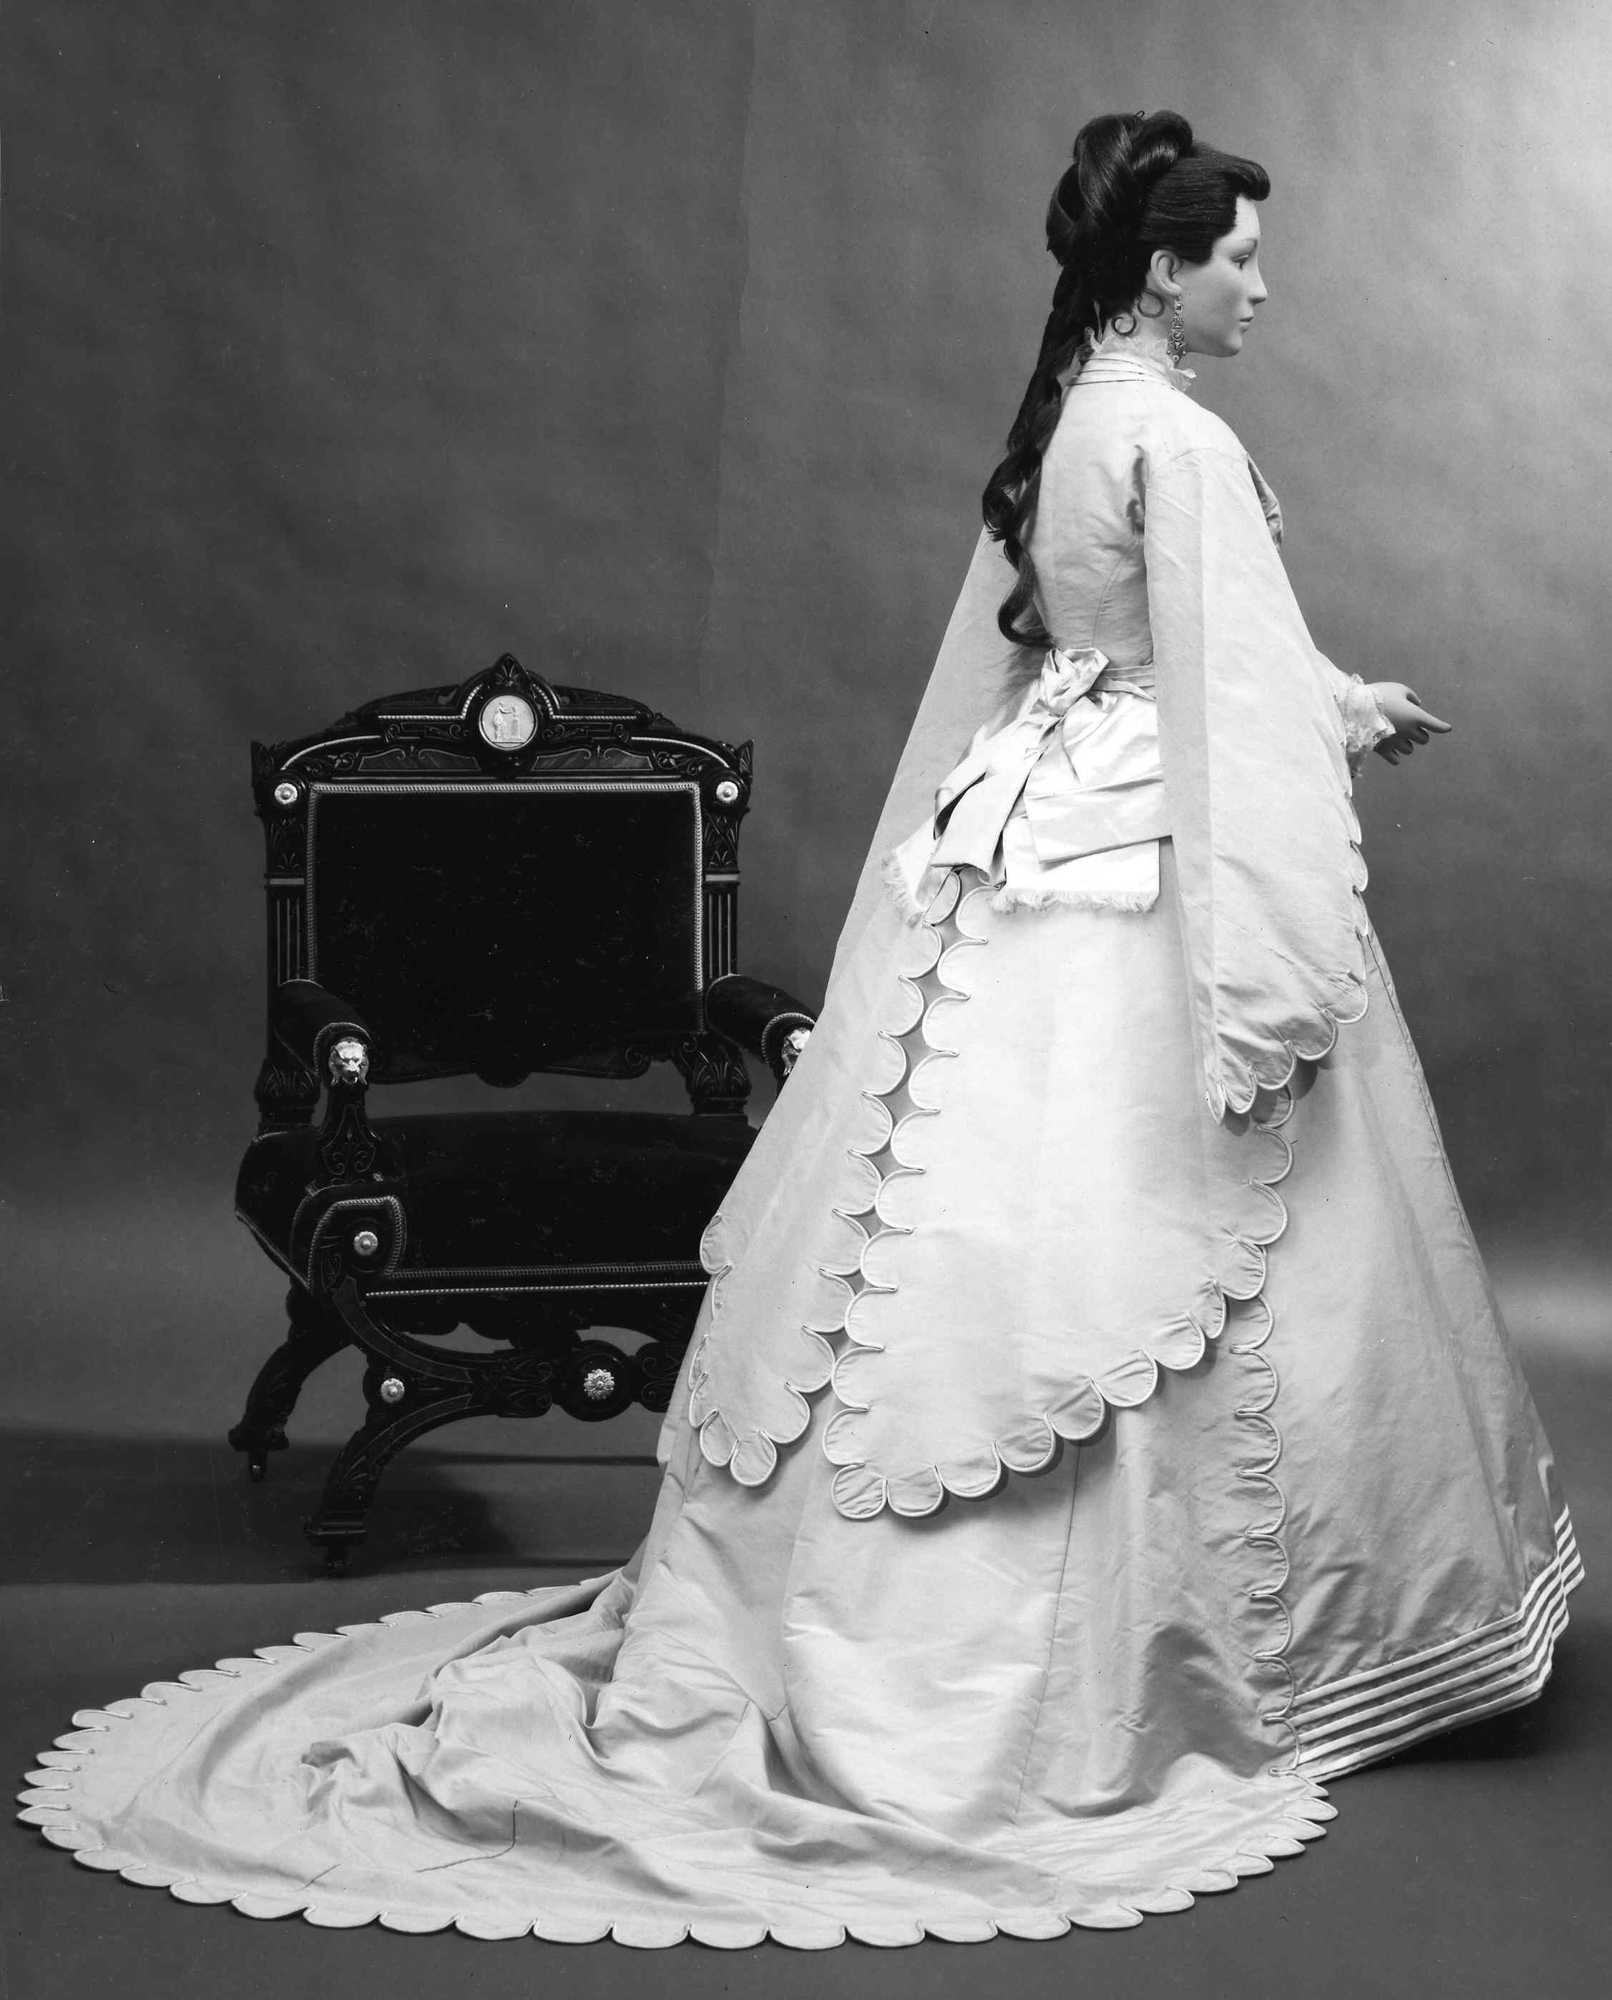 Váy cưới thời trang năm 1870 theo thiết kế trailing fabric 